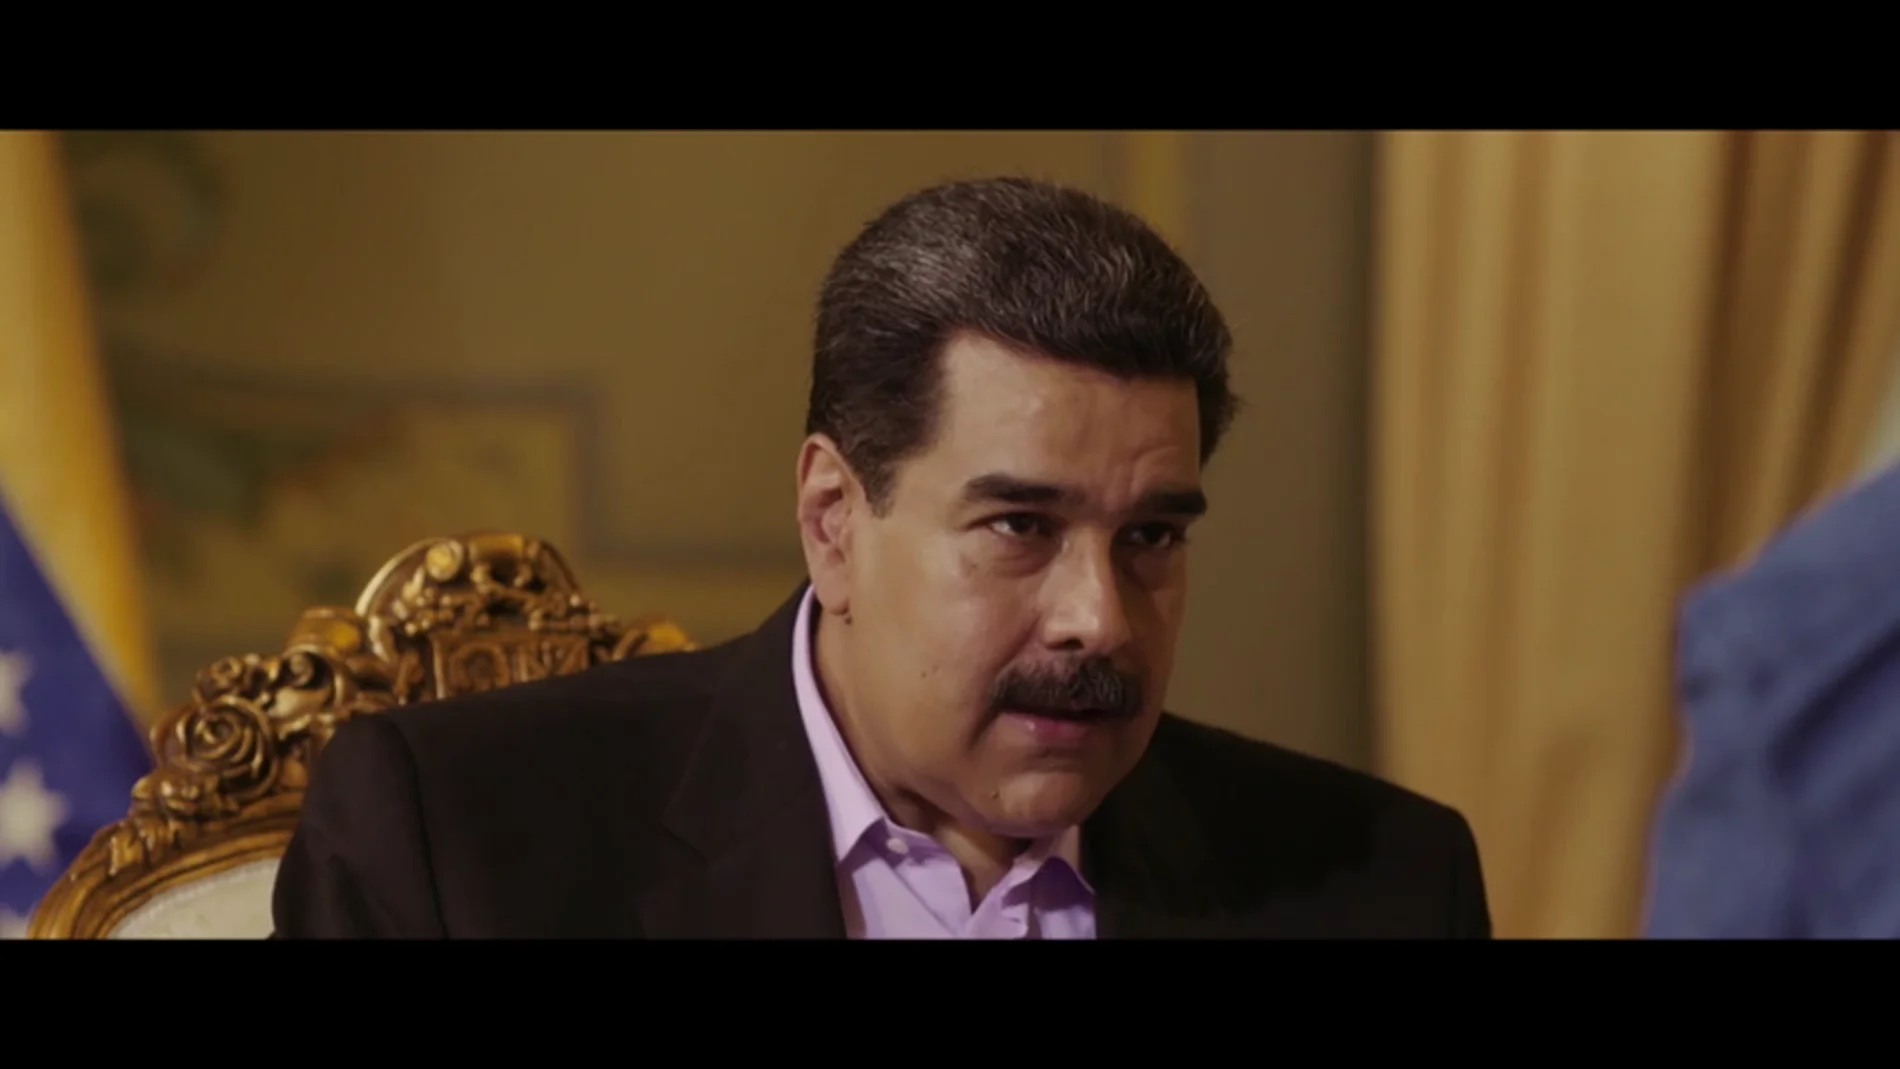 El aviso de Nicolás Maduro: "Pedro Sánchez, por las malas nunca aceptaremos nada, te hundirás tú"